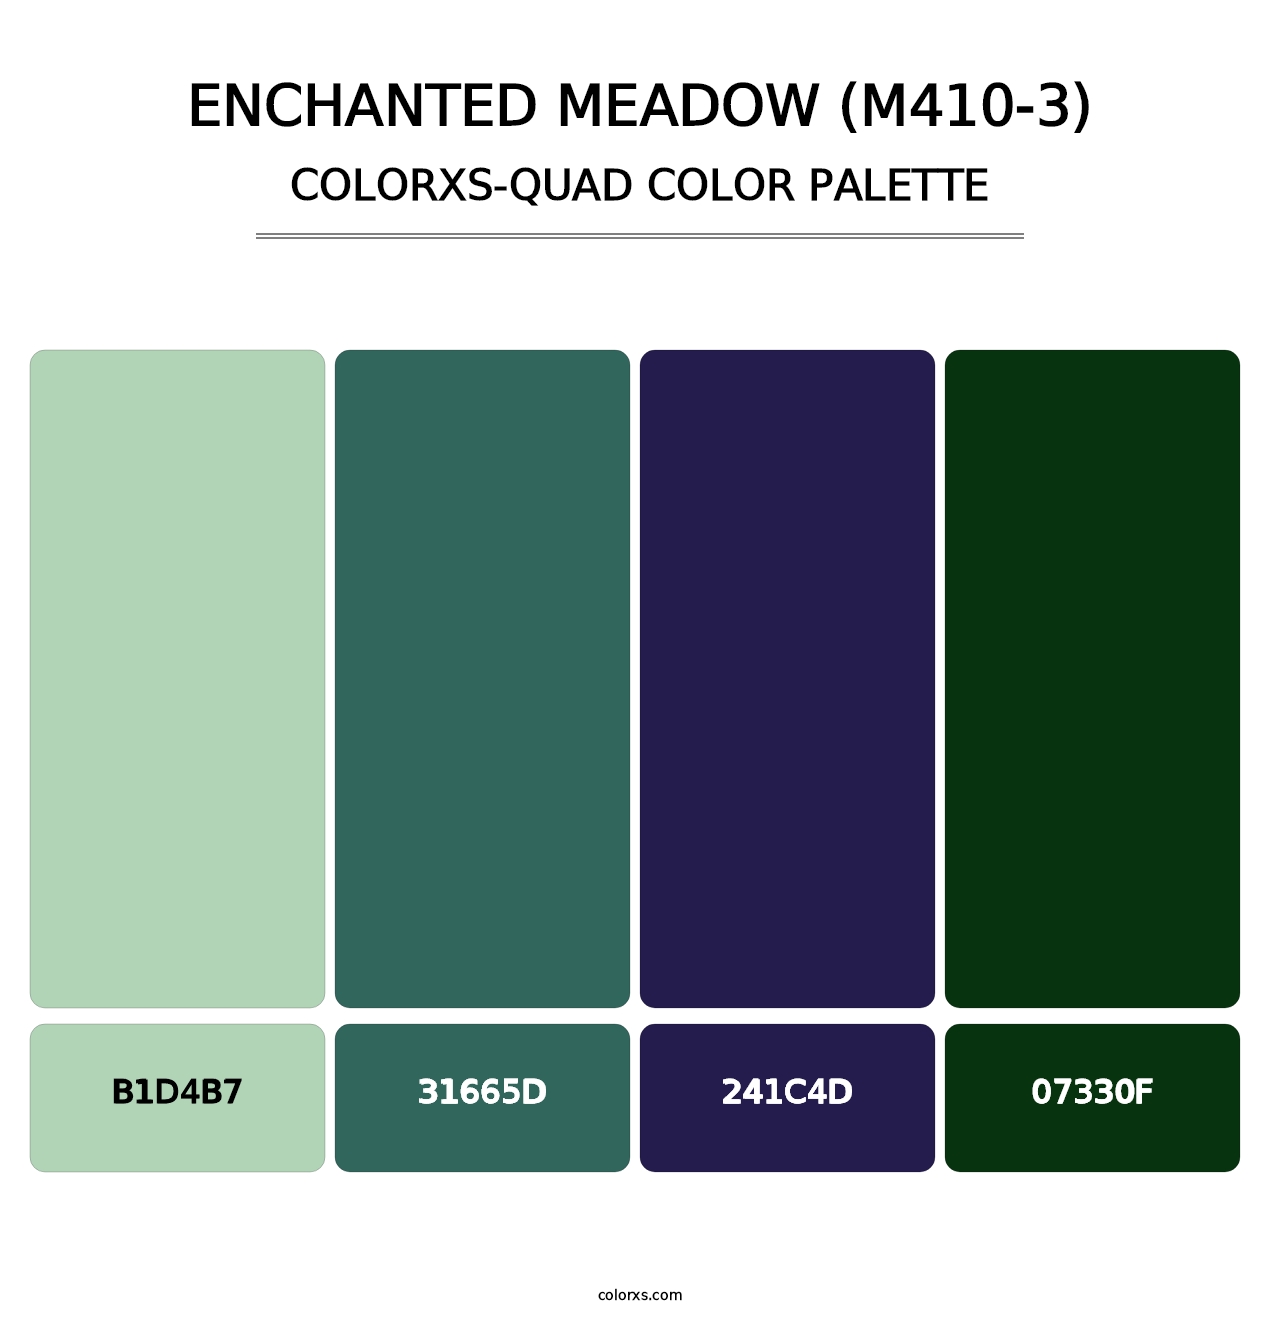 Enchanted Meadow (M410-3) - Colorxs Quad Palette